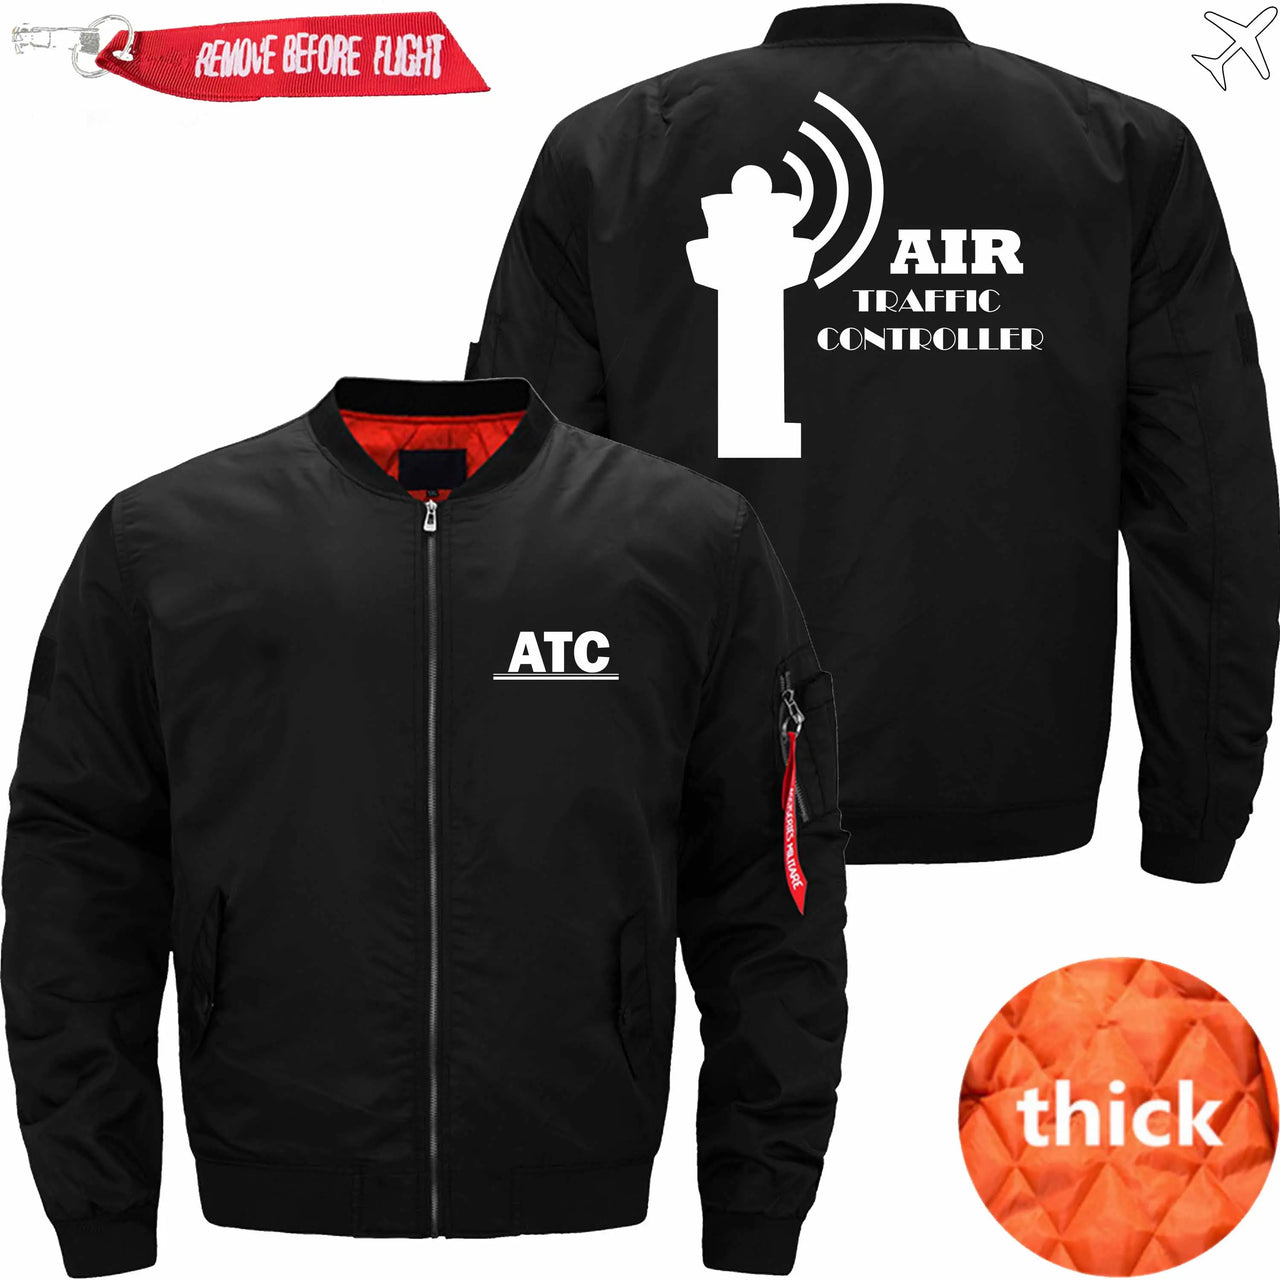 AIR TRAFFIC CONTROLLER - JACKET THE AV8R